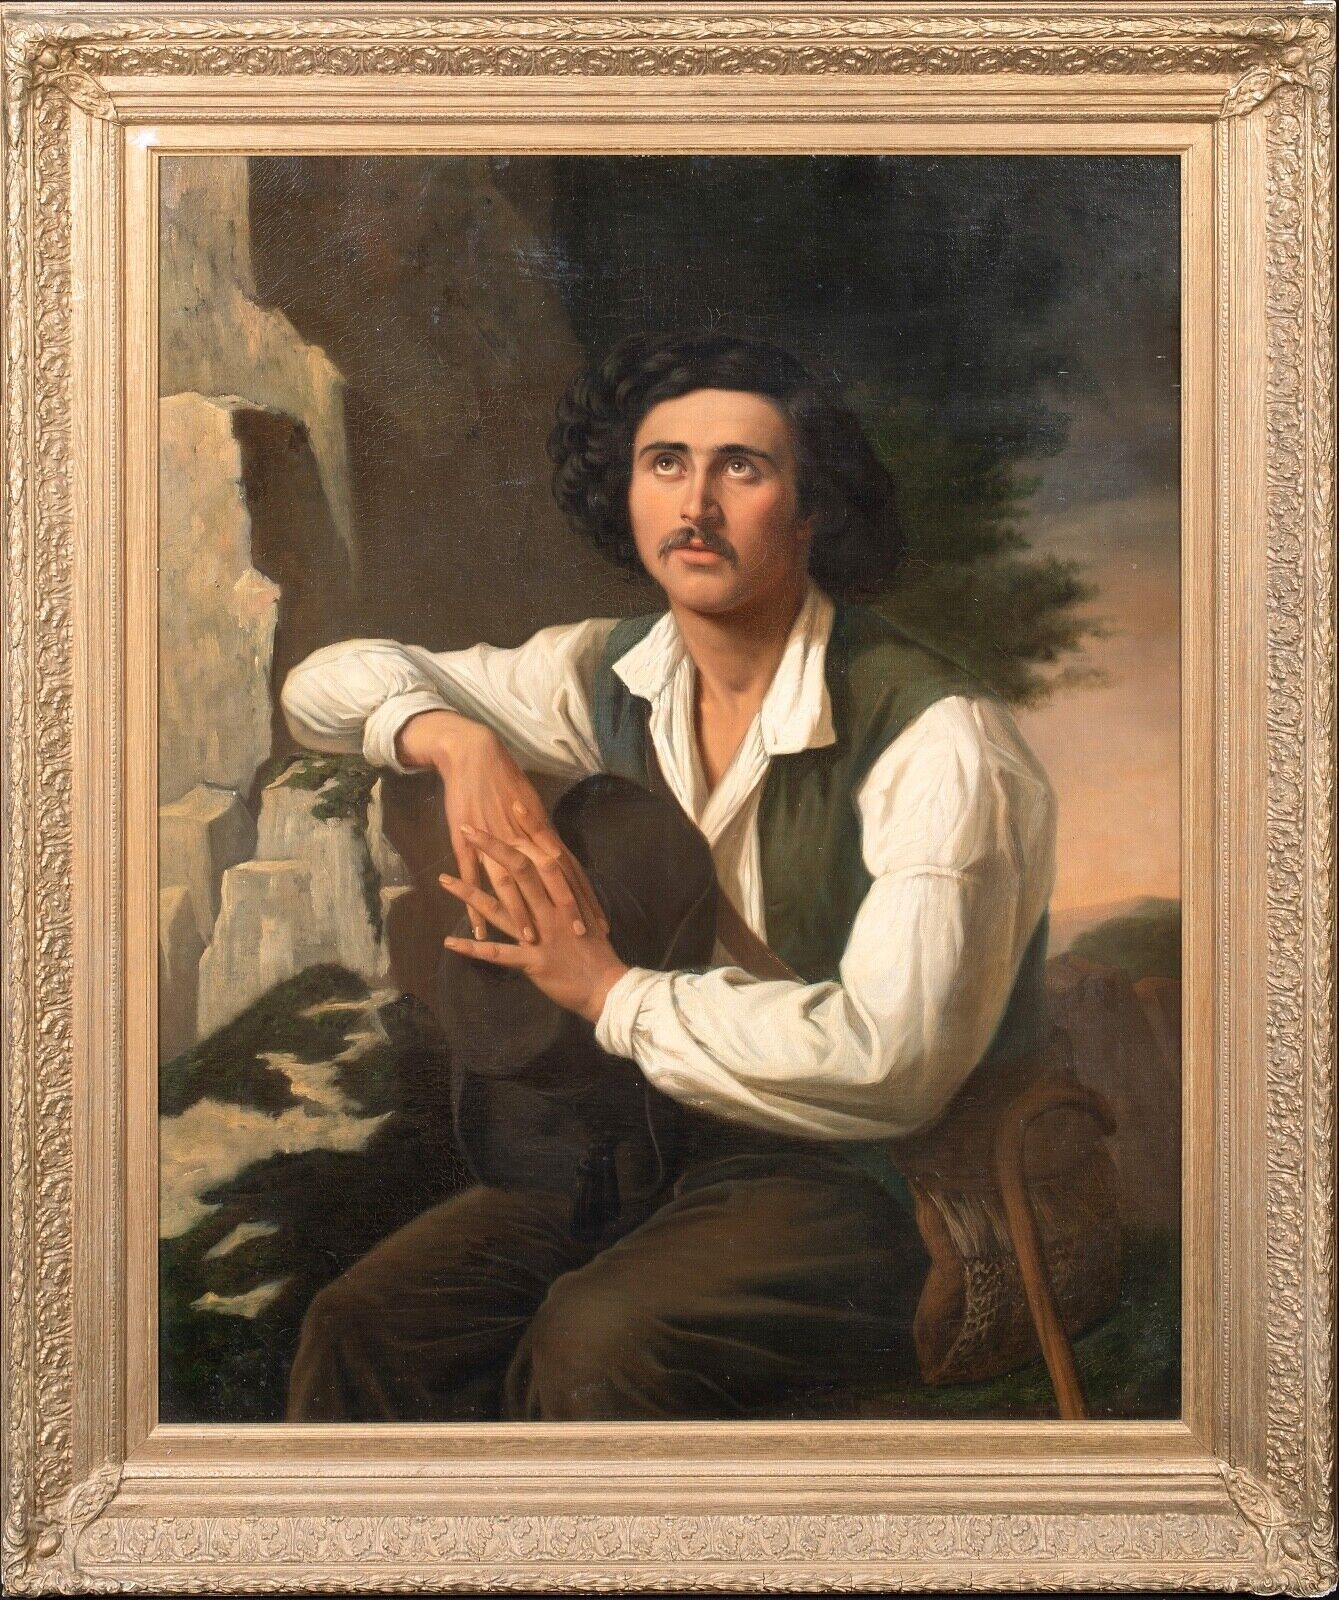 PORTRAIT OF AN ITALIAN TRAVELLER GENTLEMAN